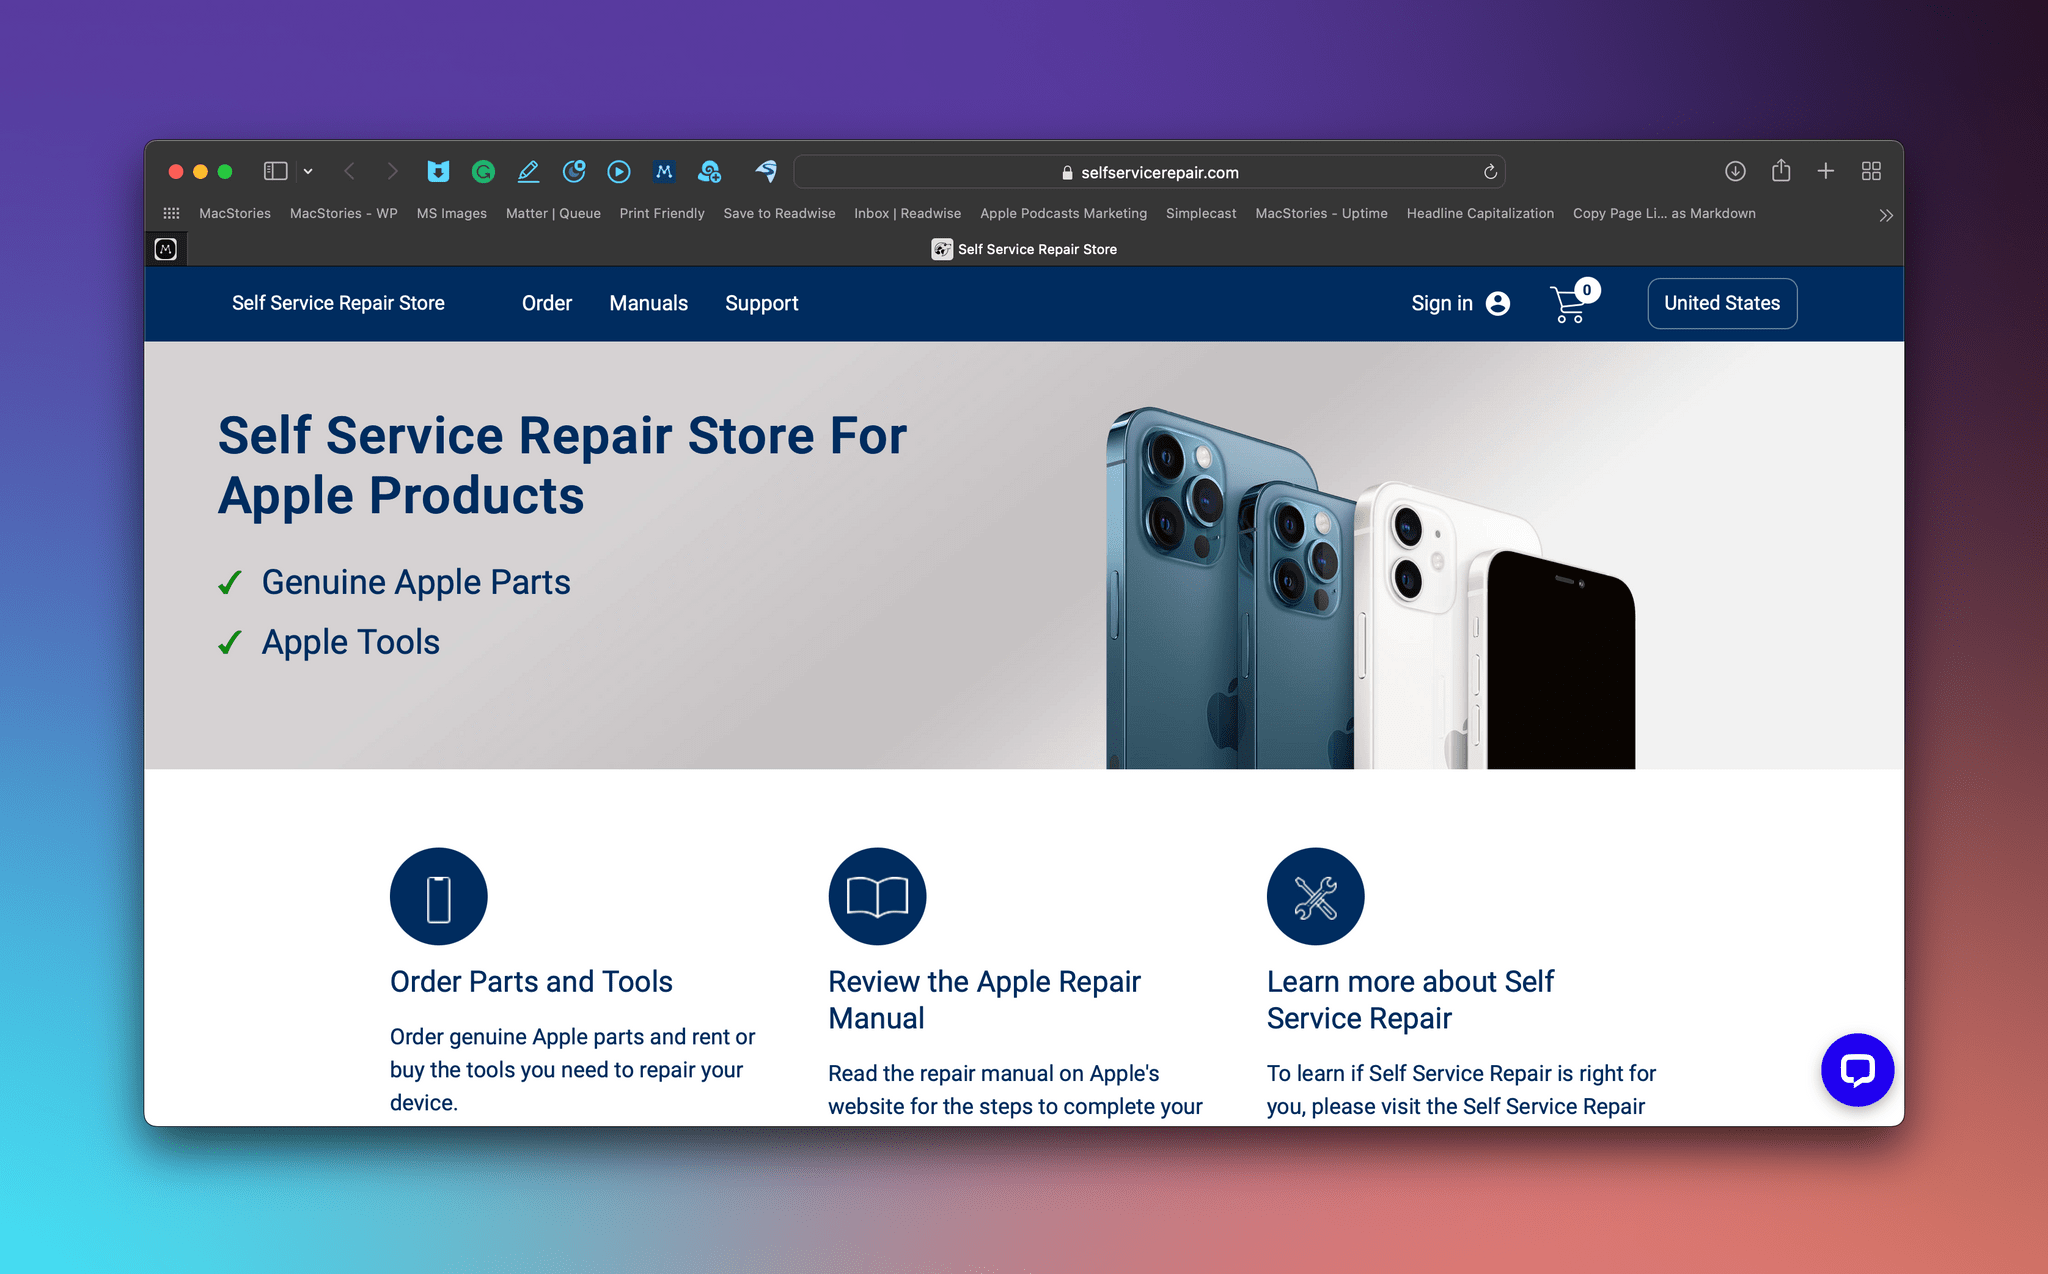 Apple's Self Service Repair Store.